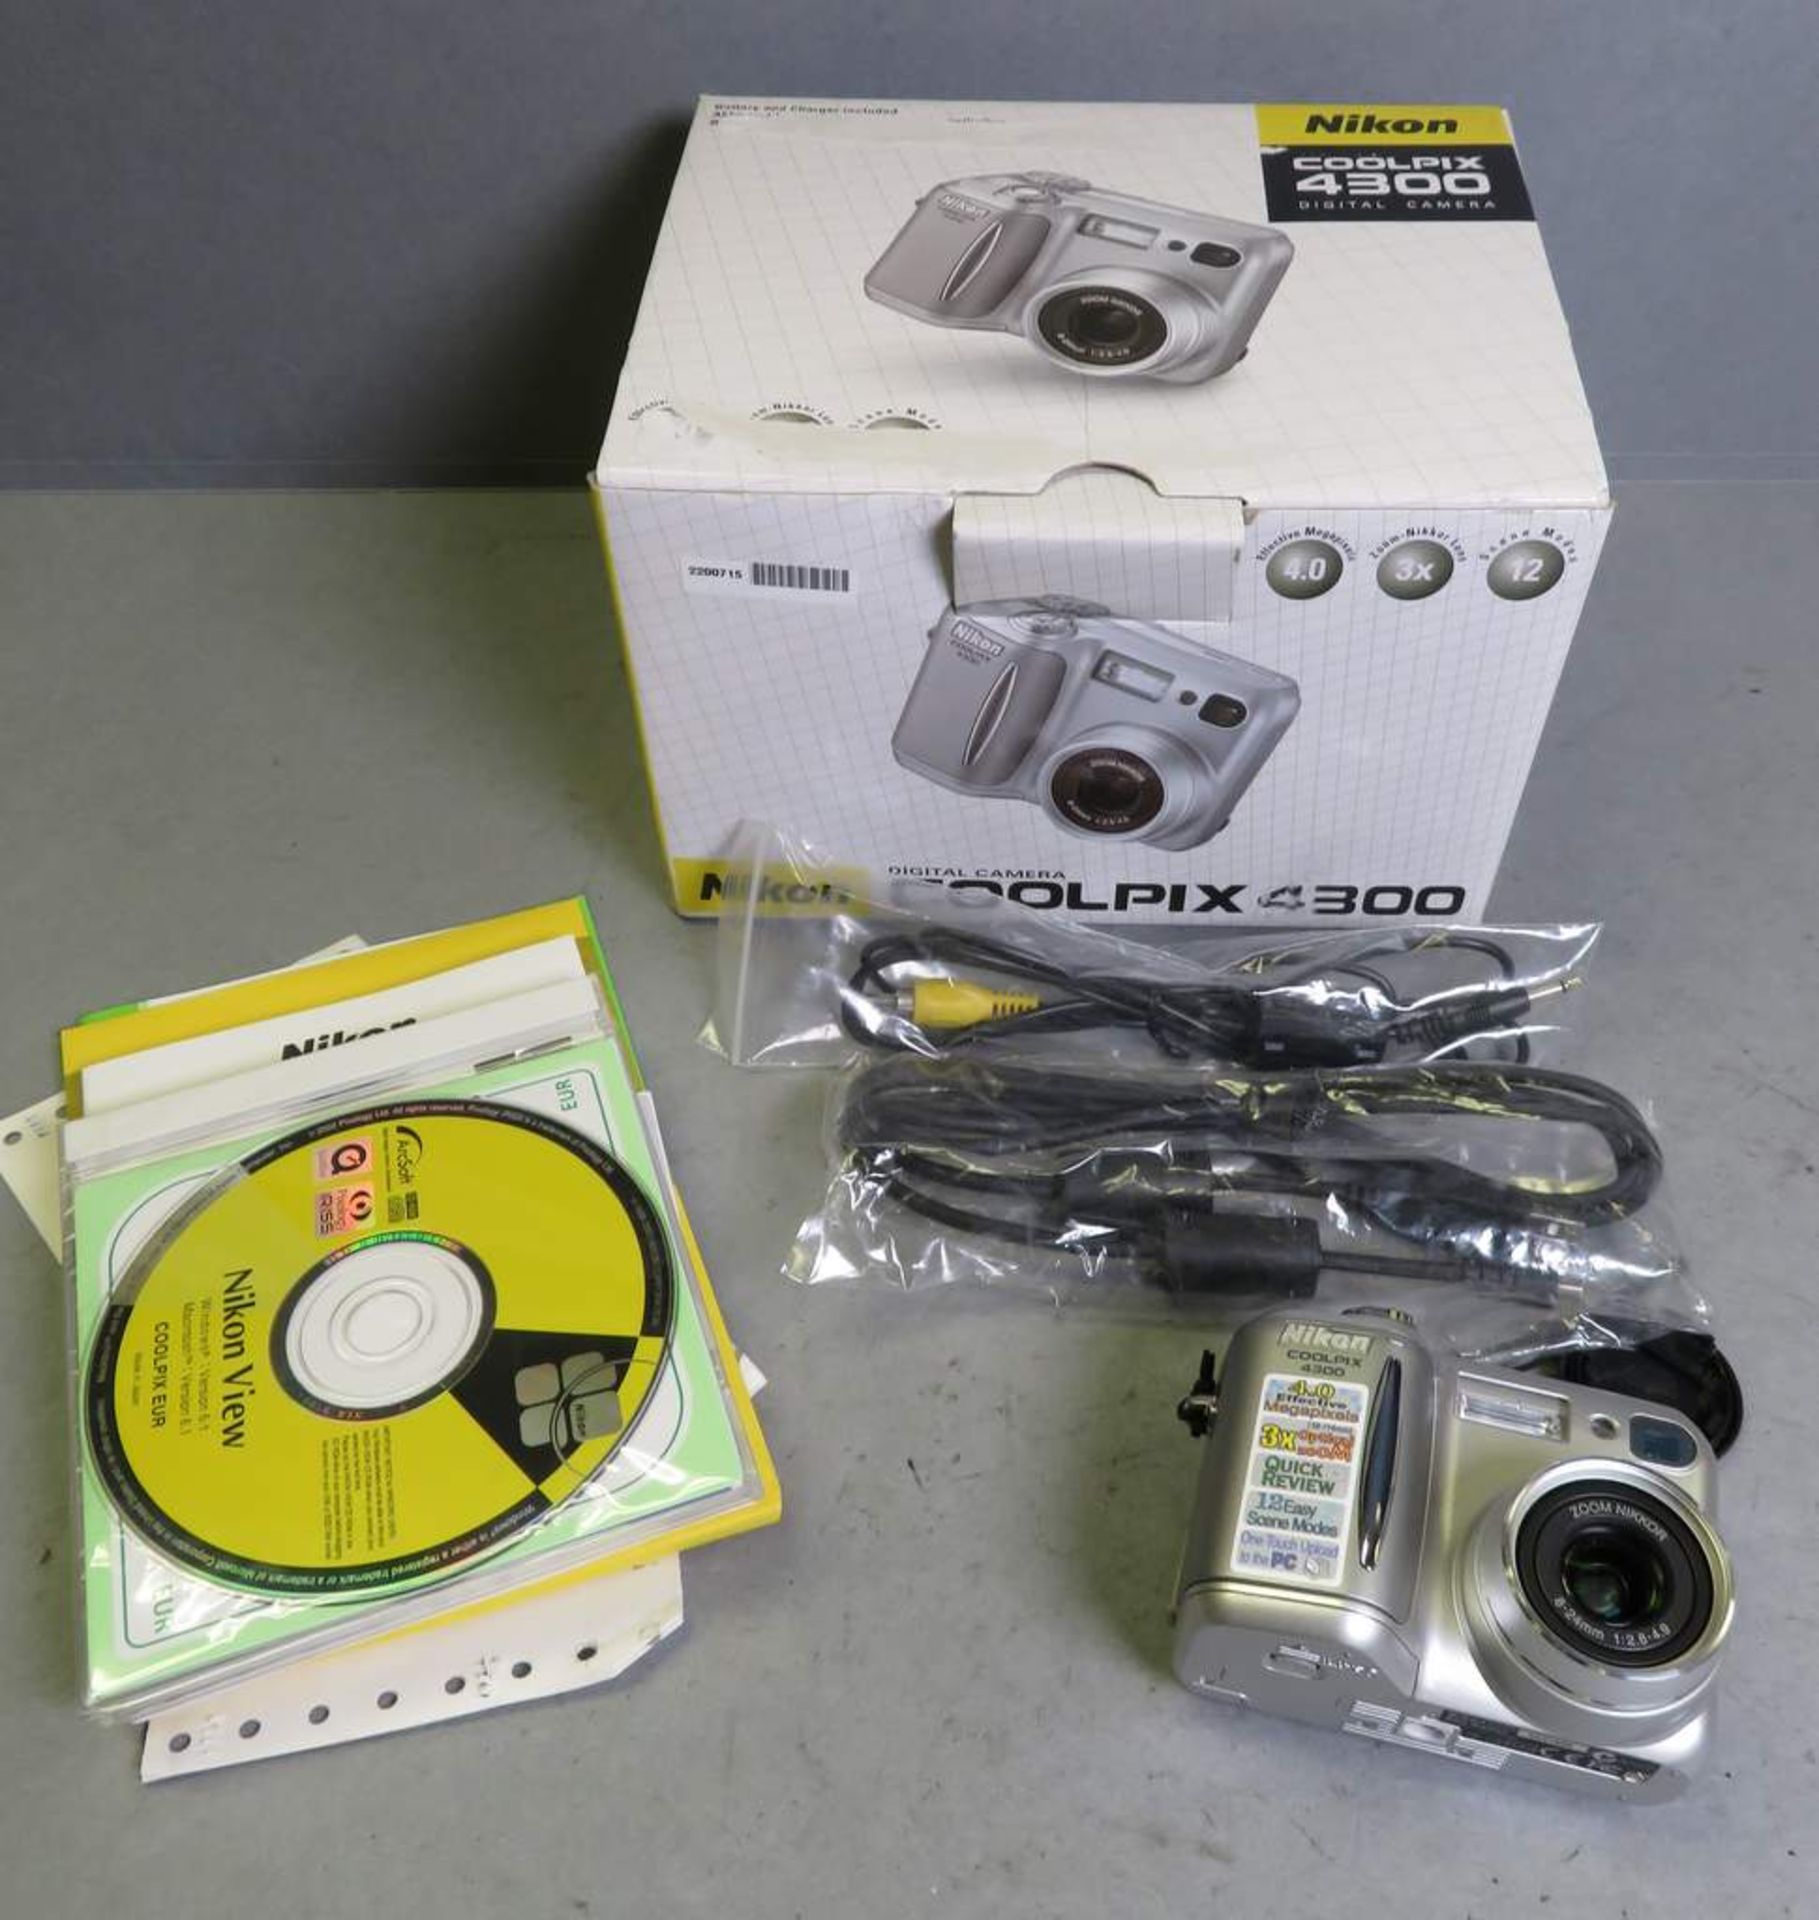 Nikon Coolpix 4300 digital camera